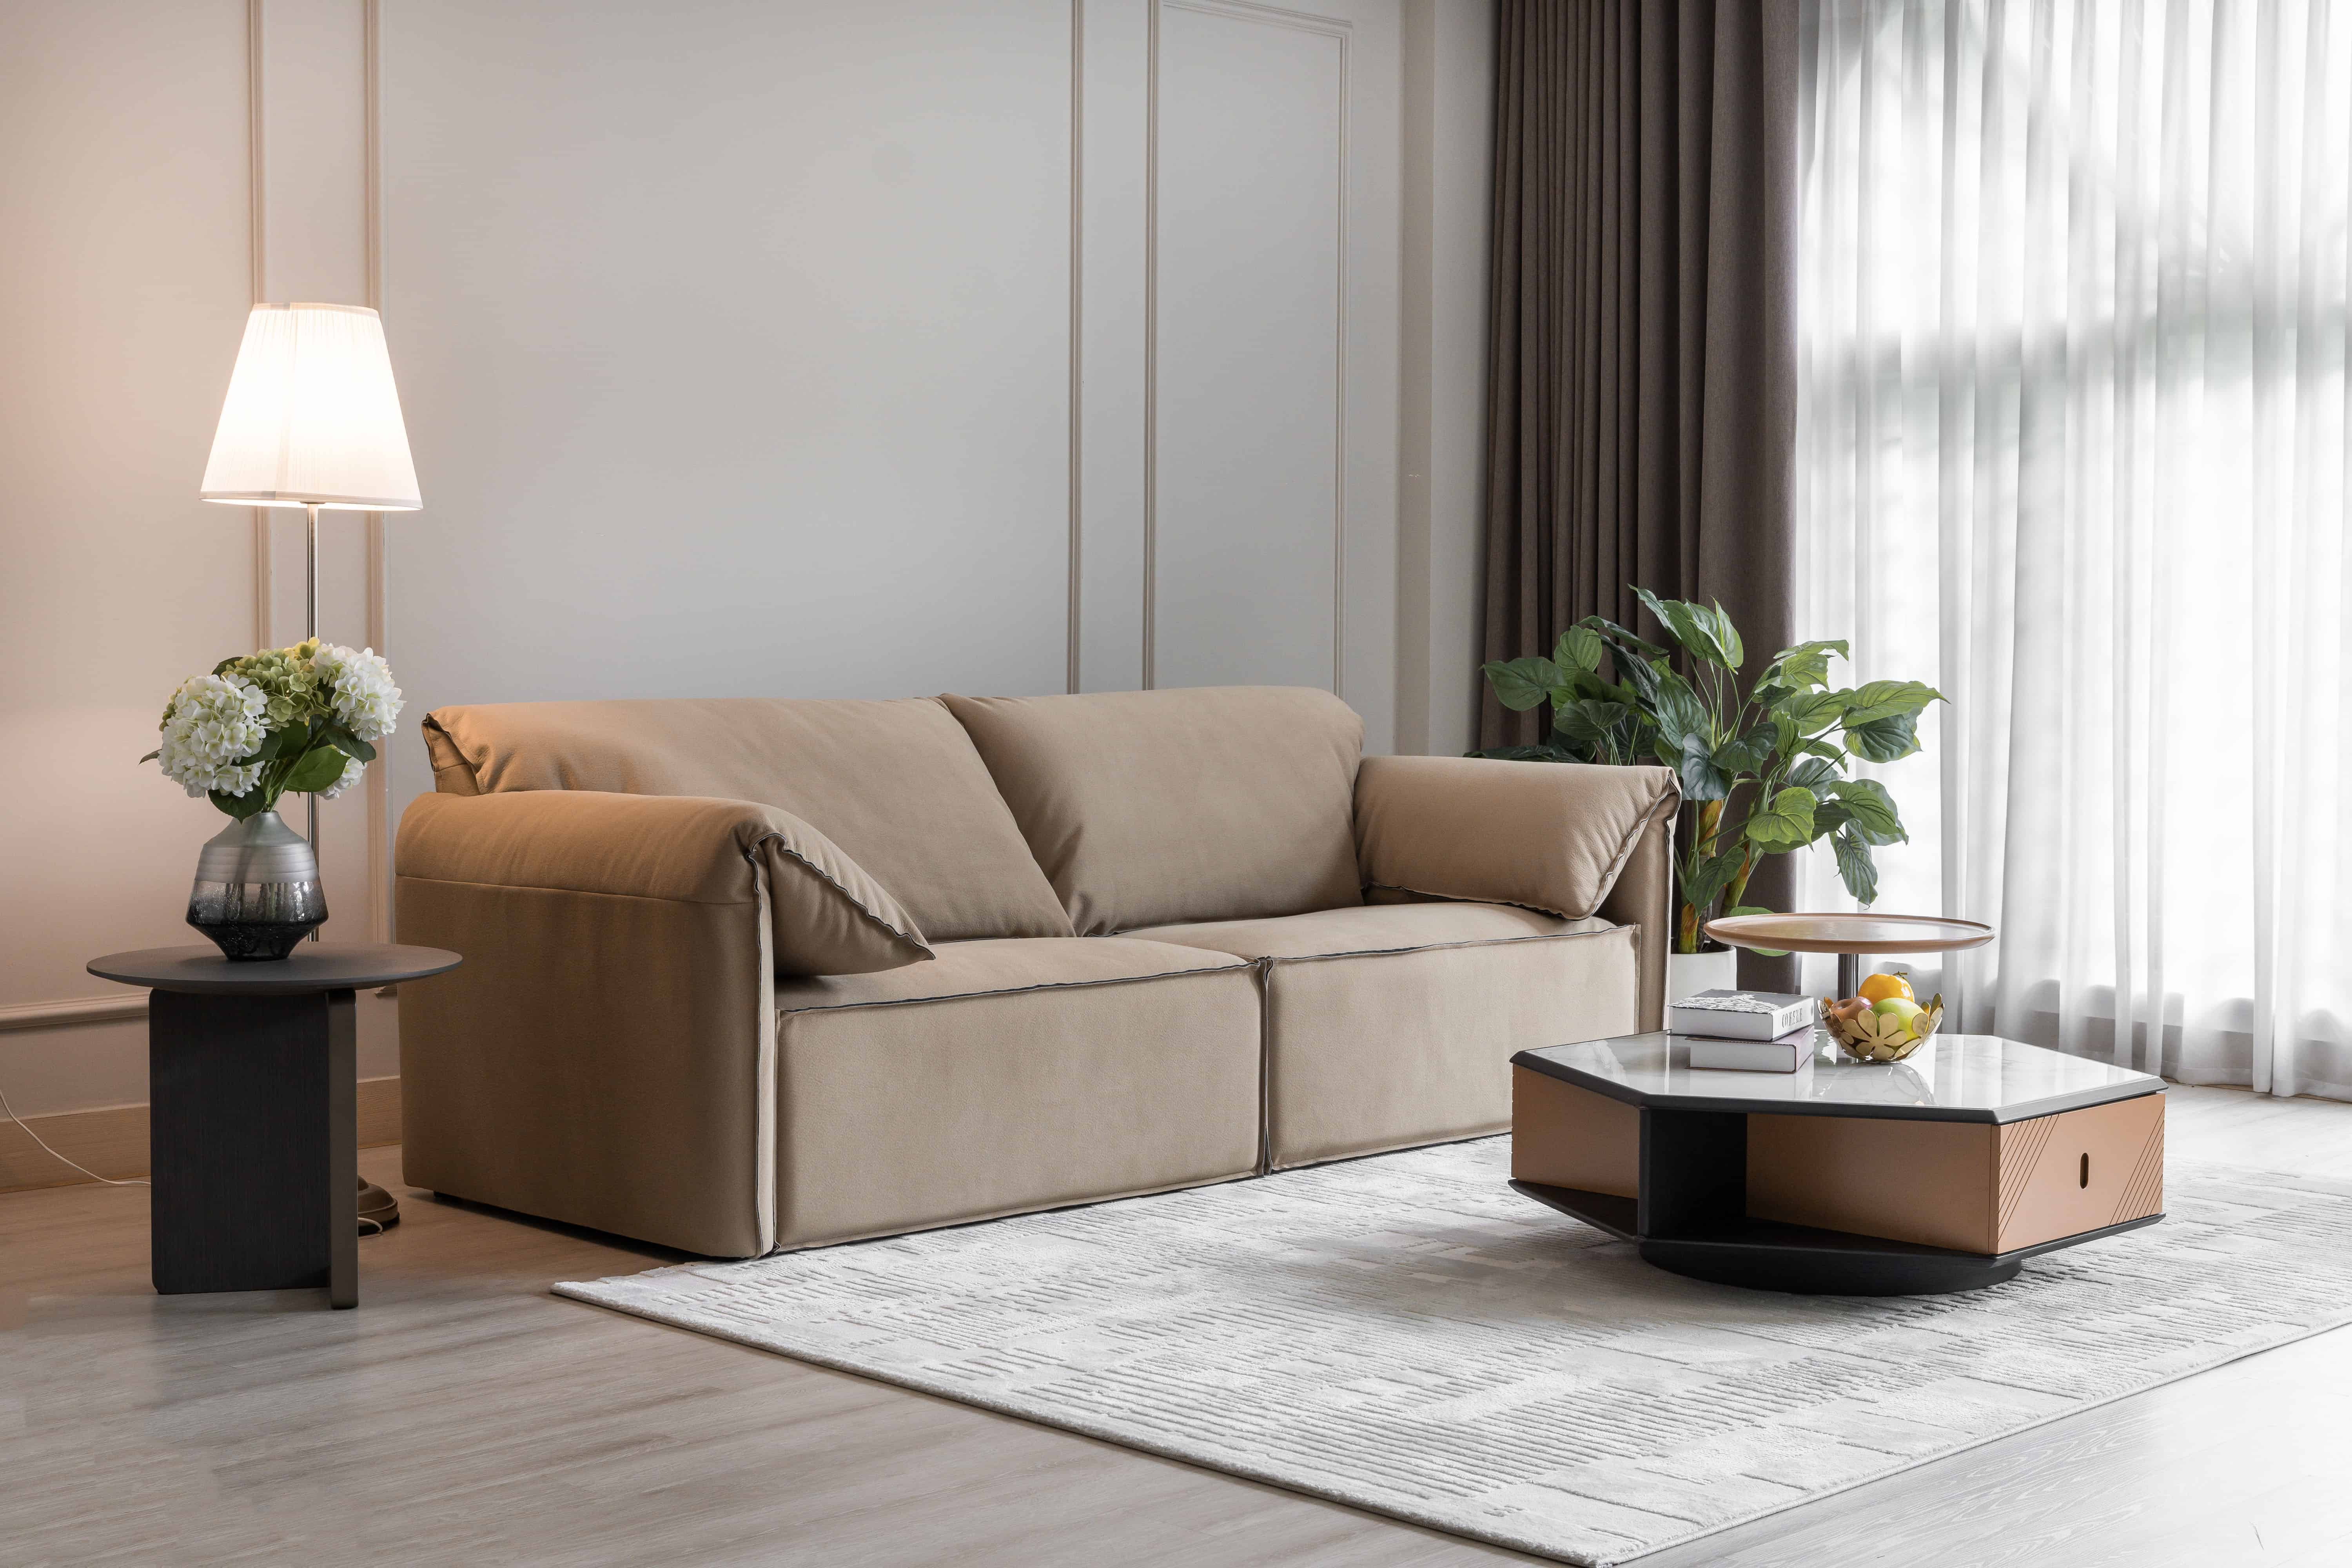 IMA – nơi bạn hoàn toàn có thể lựa chọn được 1 bộ sofa ưng ý để thay đổi tổng thể căn phòng